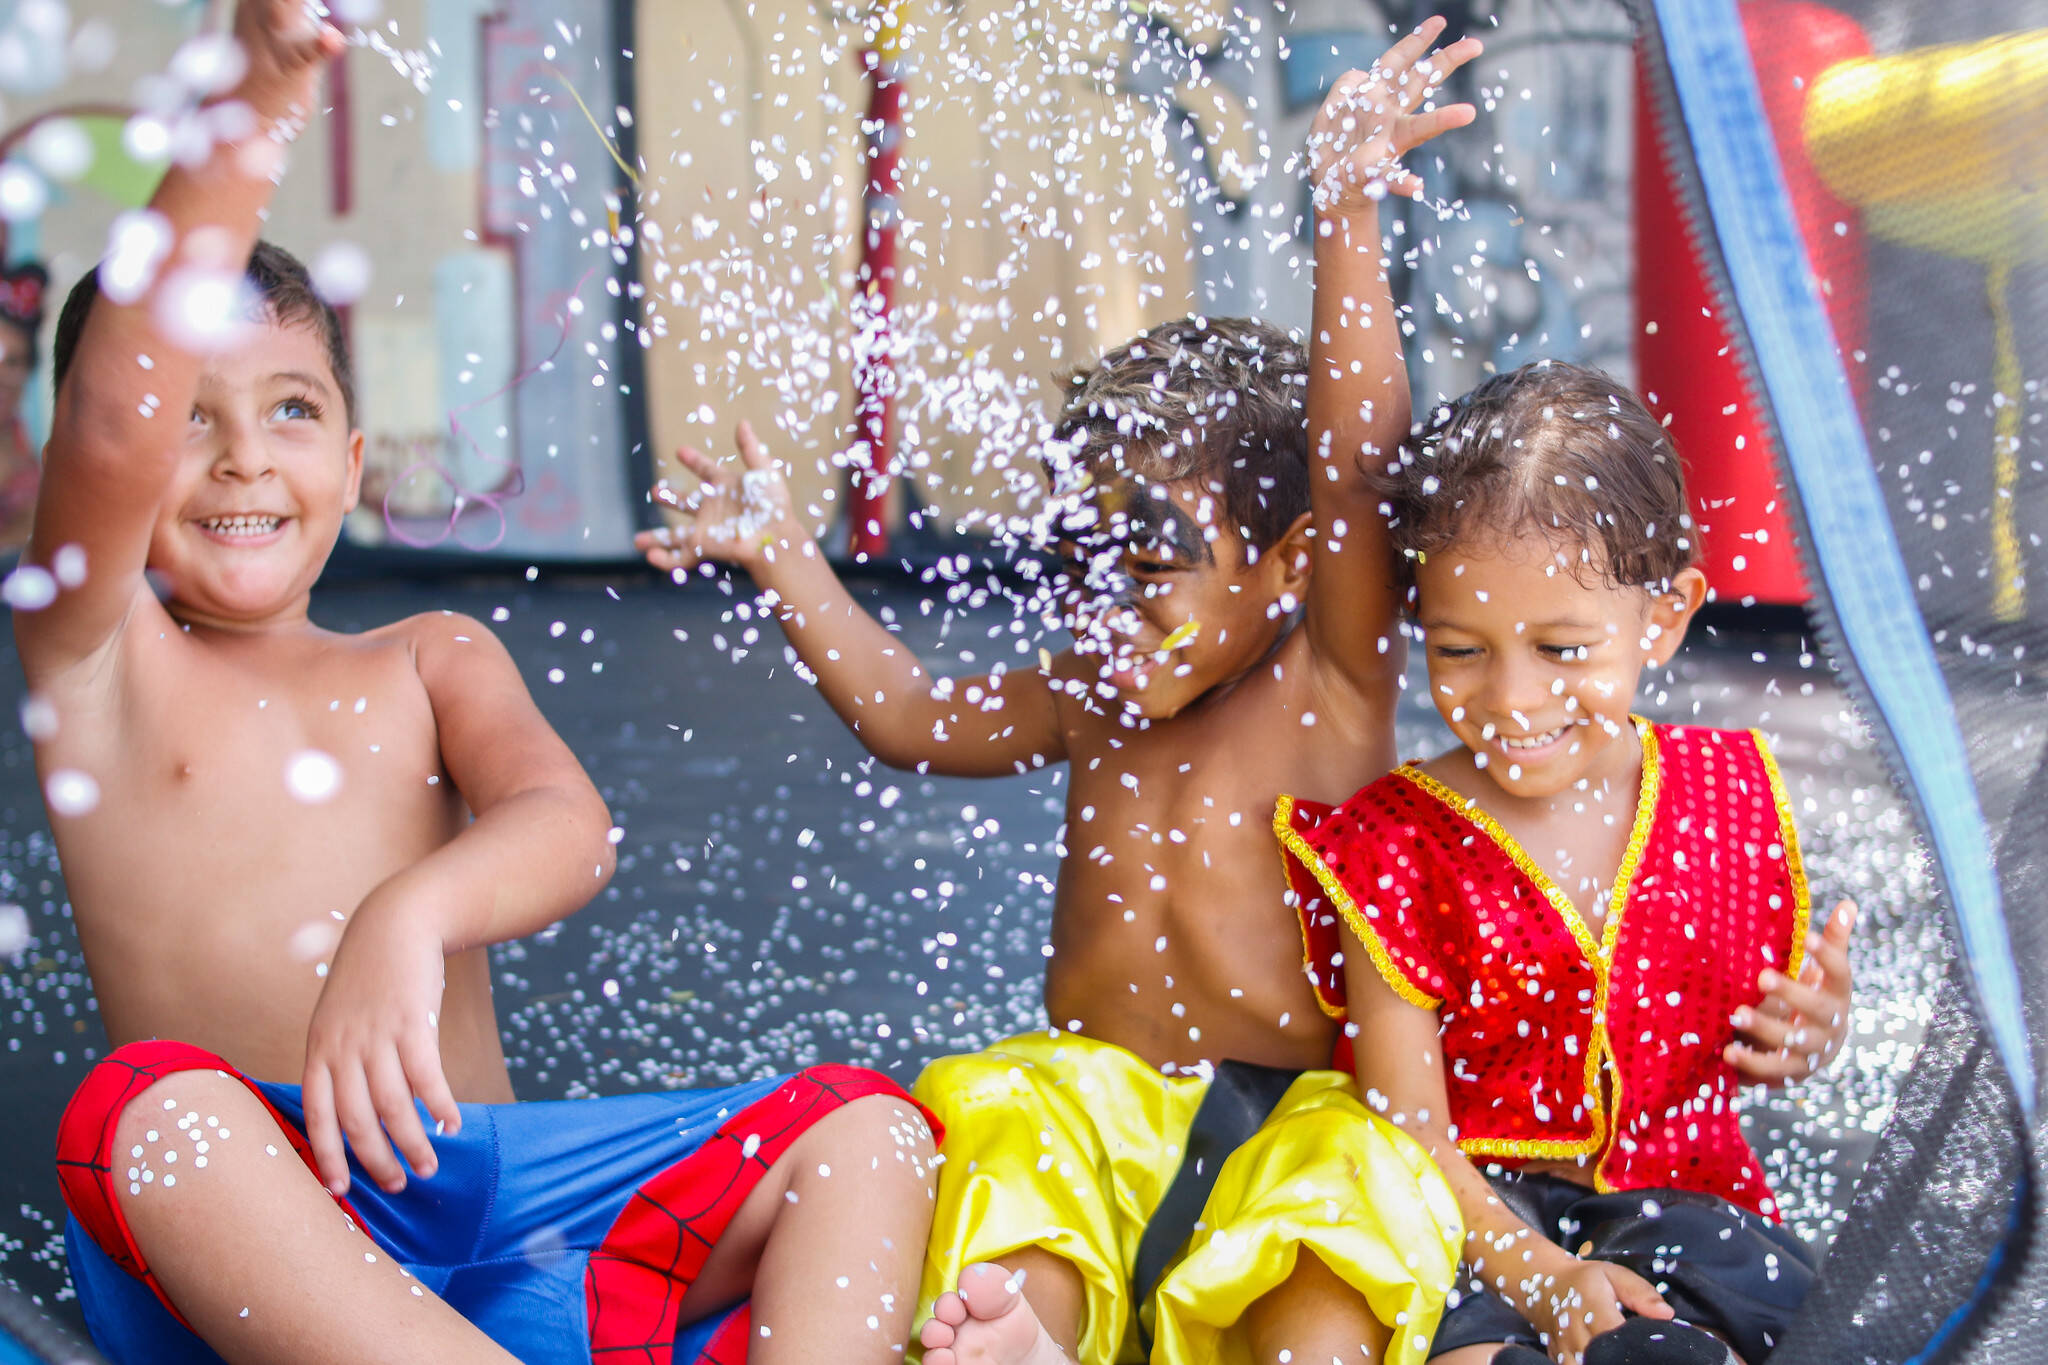 Em Olinda, a folia diverte também as crianças. Foto: Alice Maria/Prefeitura de Olinda